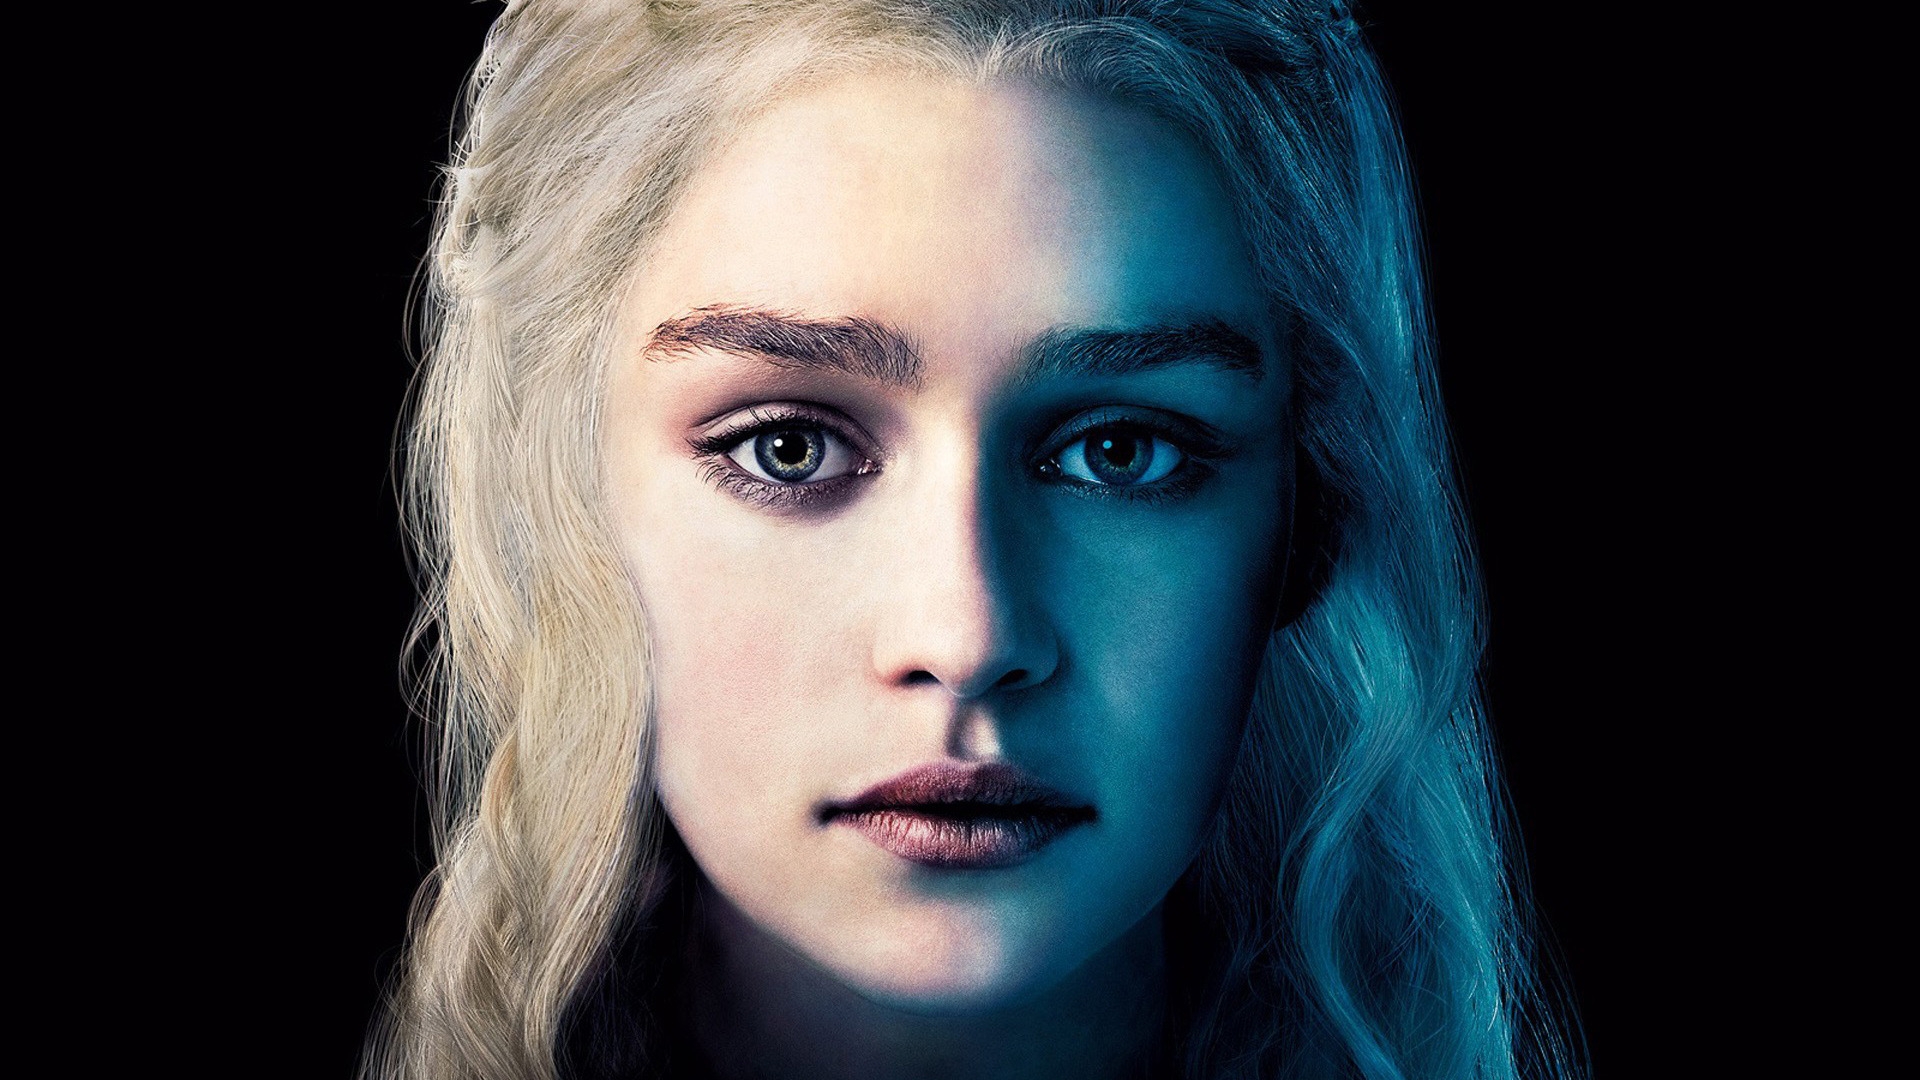 Daenerys Targaryen for 1920 x 1080 HDTV 1080p resolution